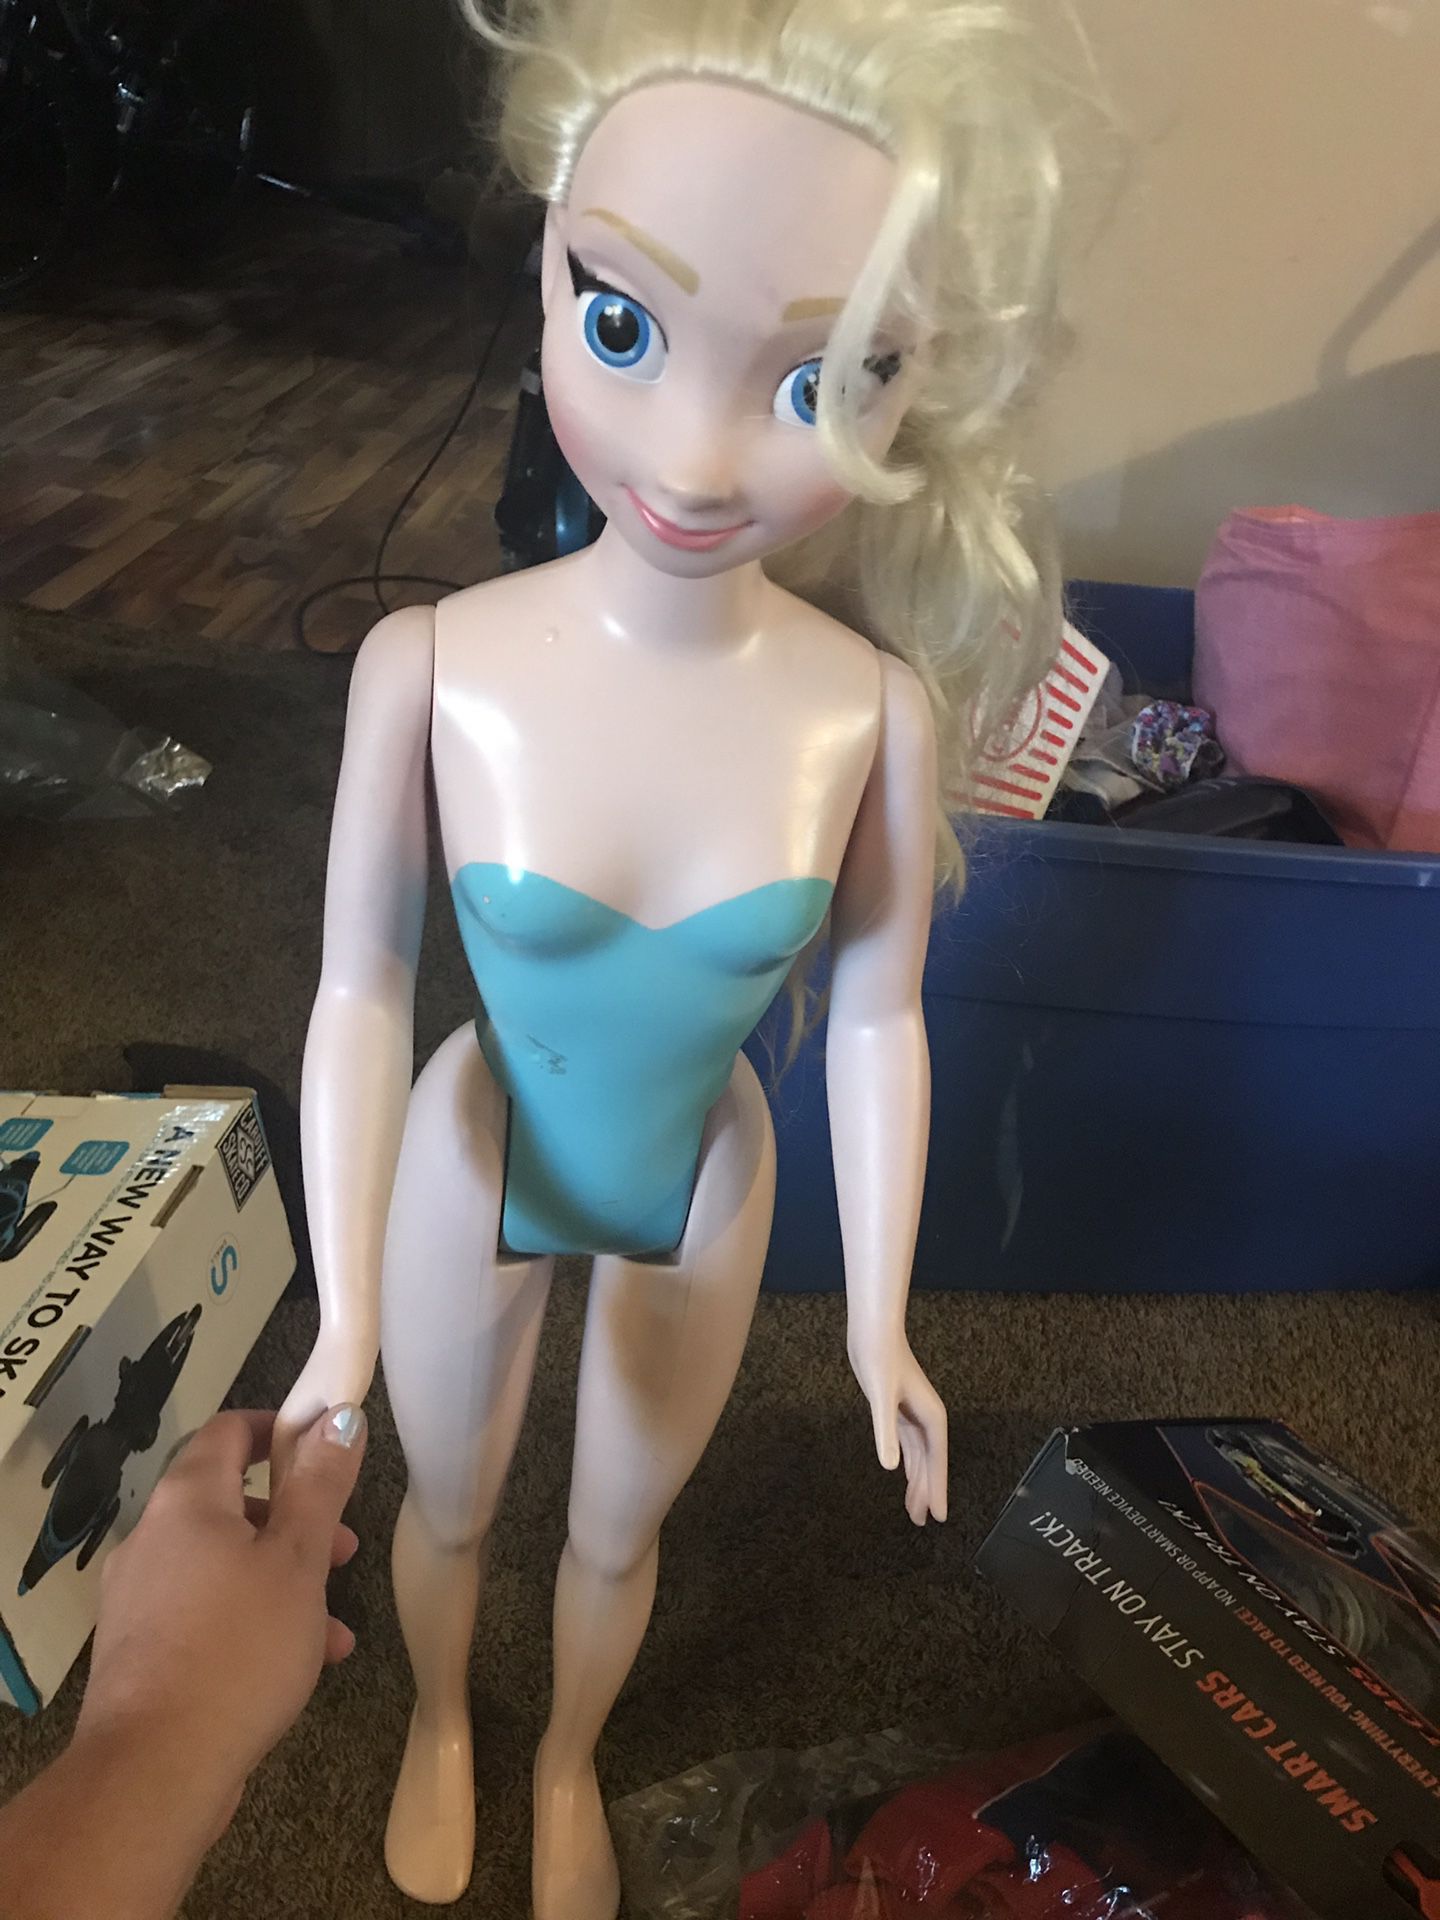 Elsa doll